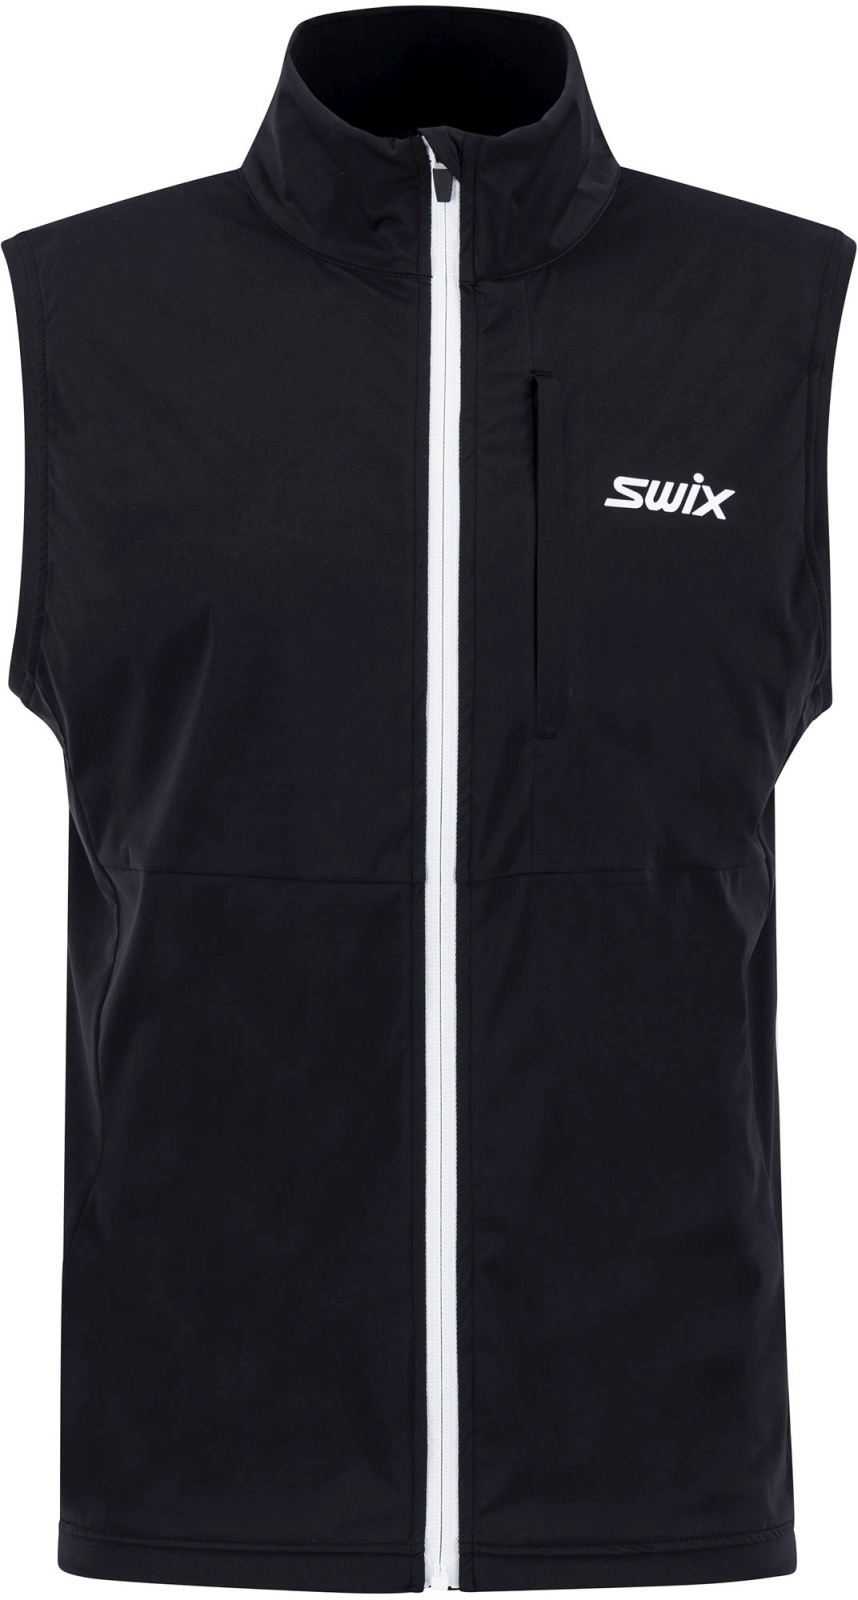 E-shop Swix Quantum performance vest M - Black L